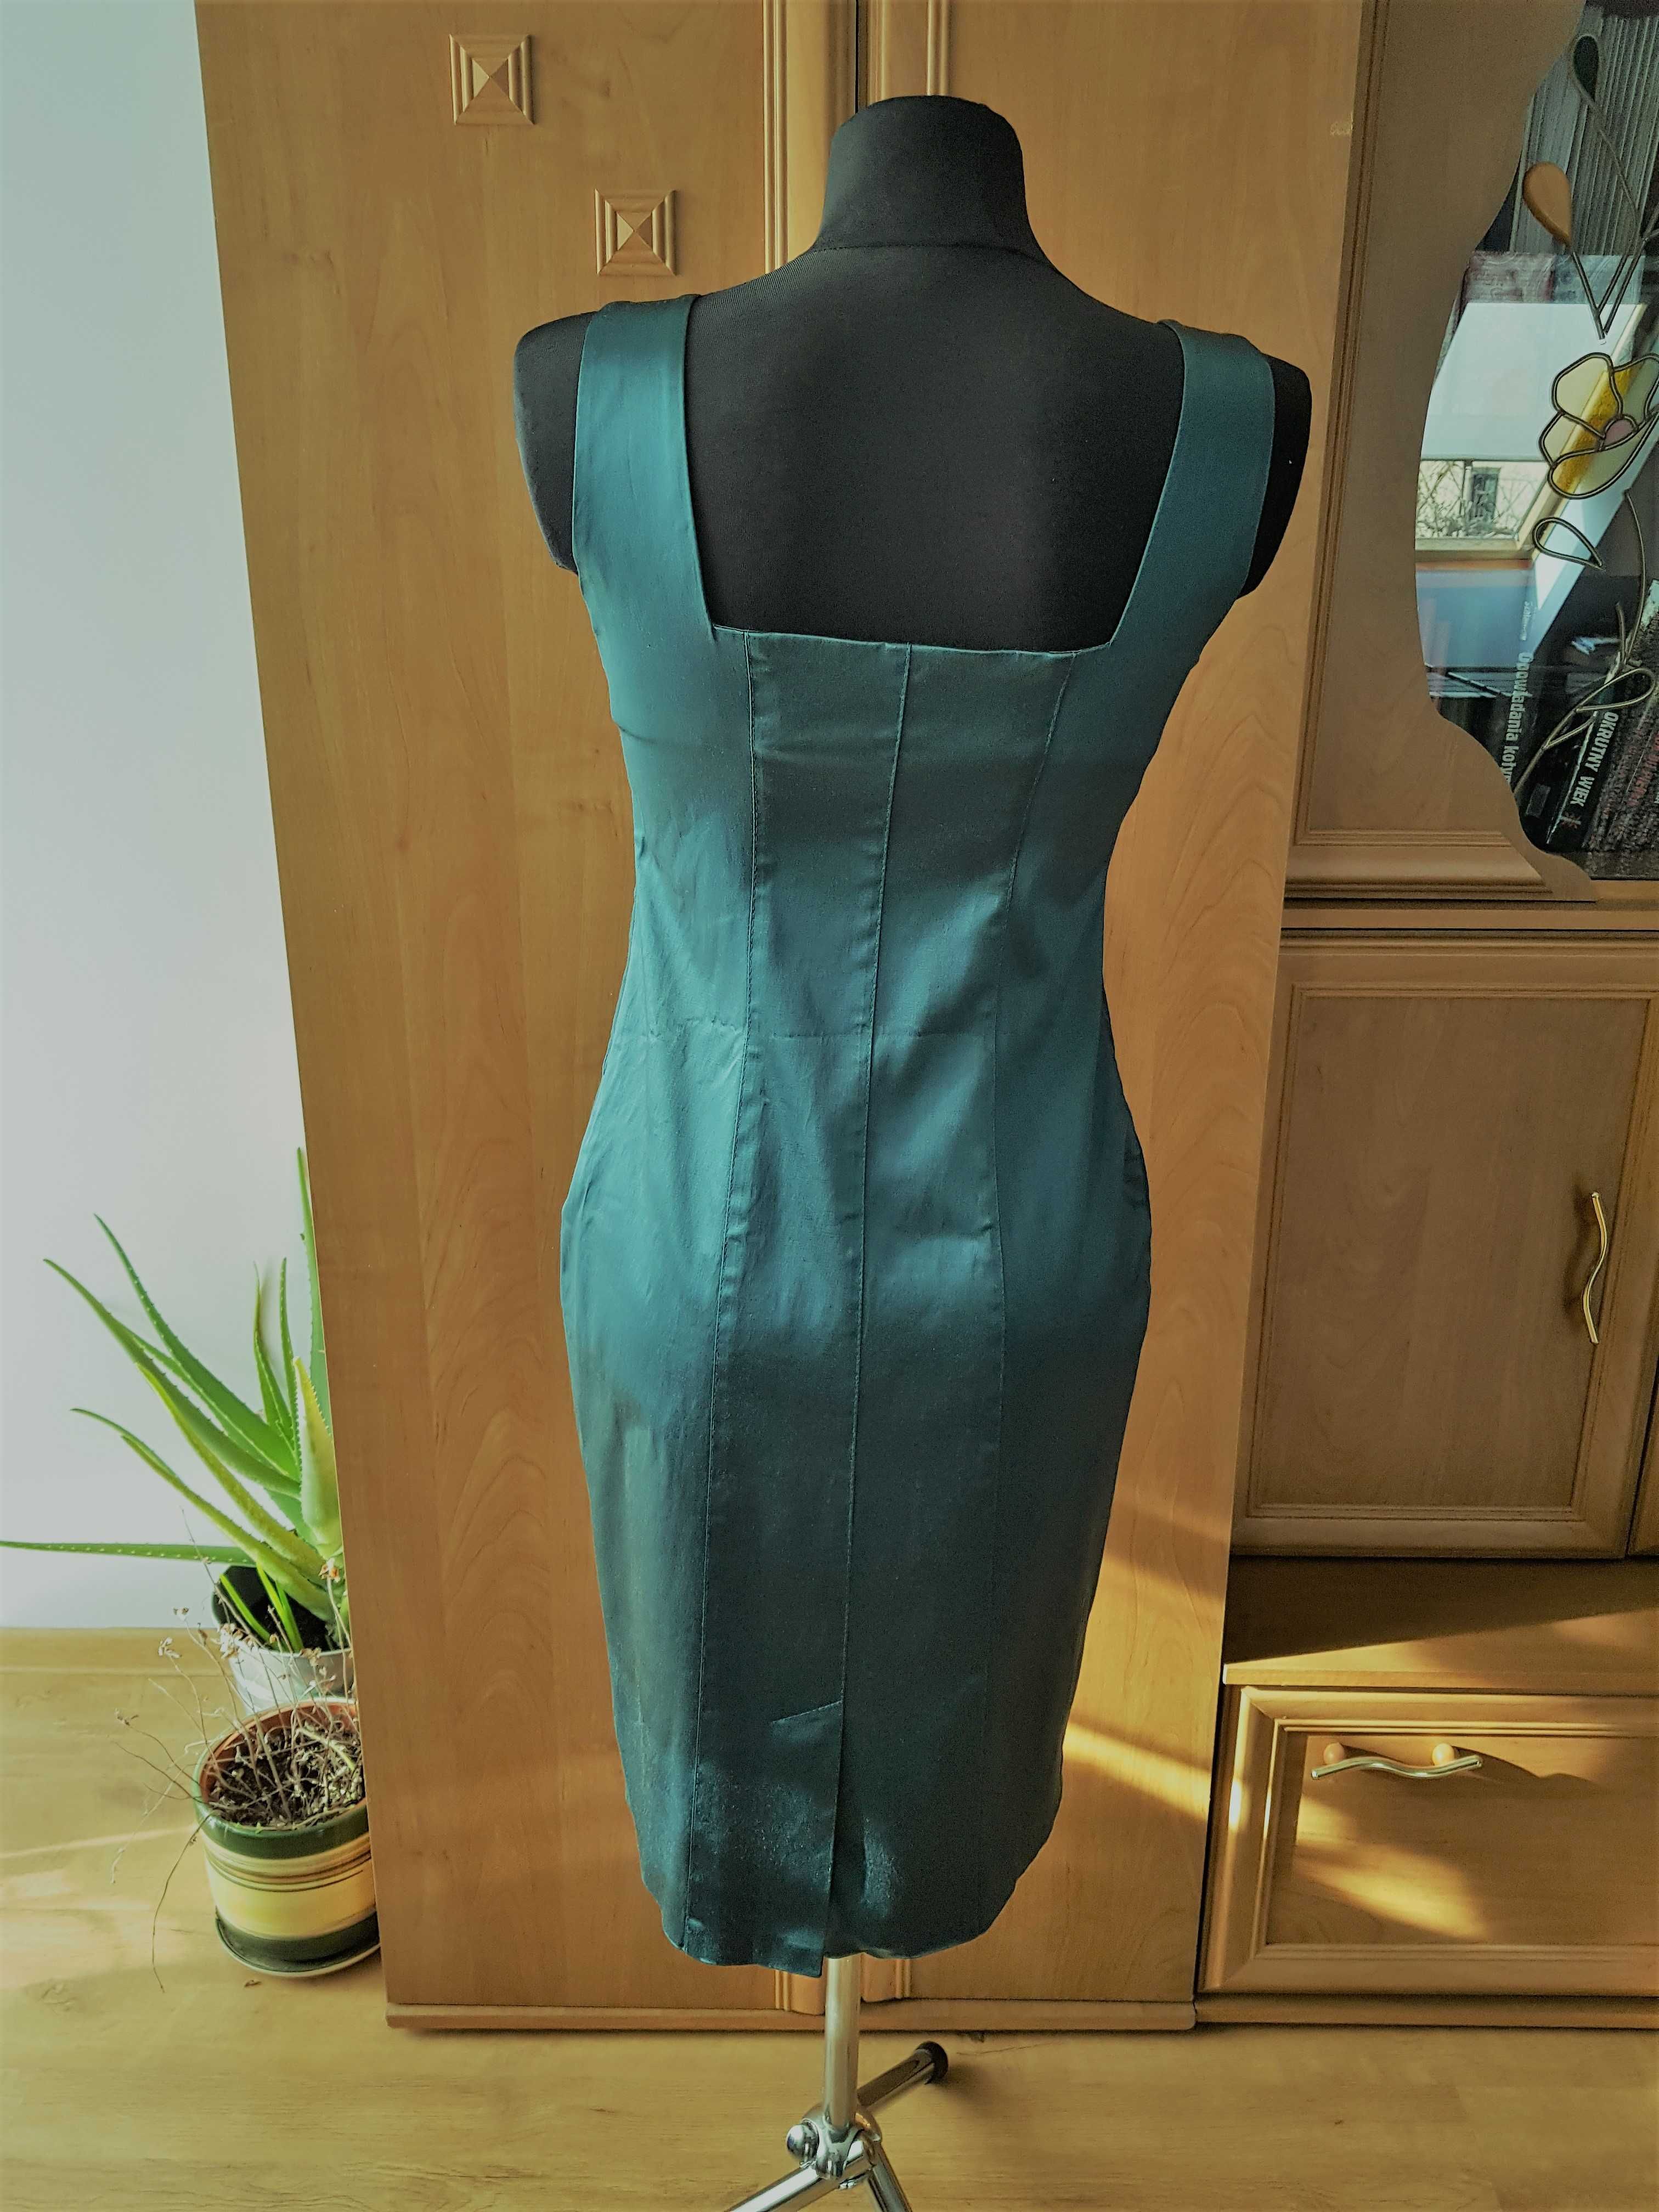 Sukienka wizytowa zieleń metaliczna + bolerko marki BOLERO rozm. 38-40